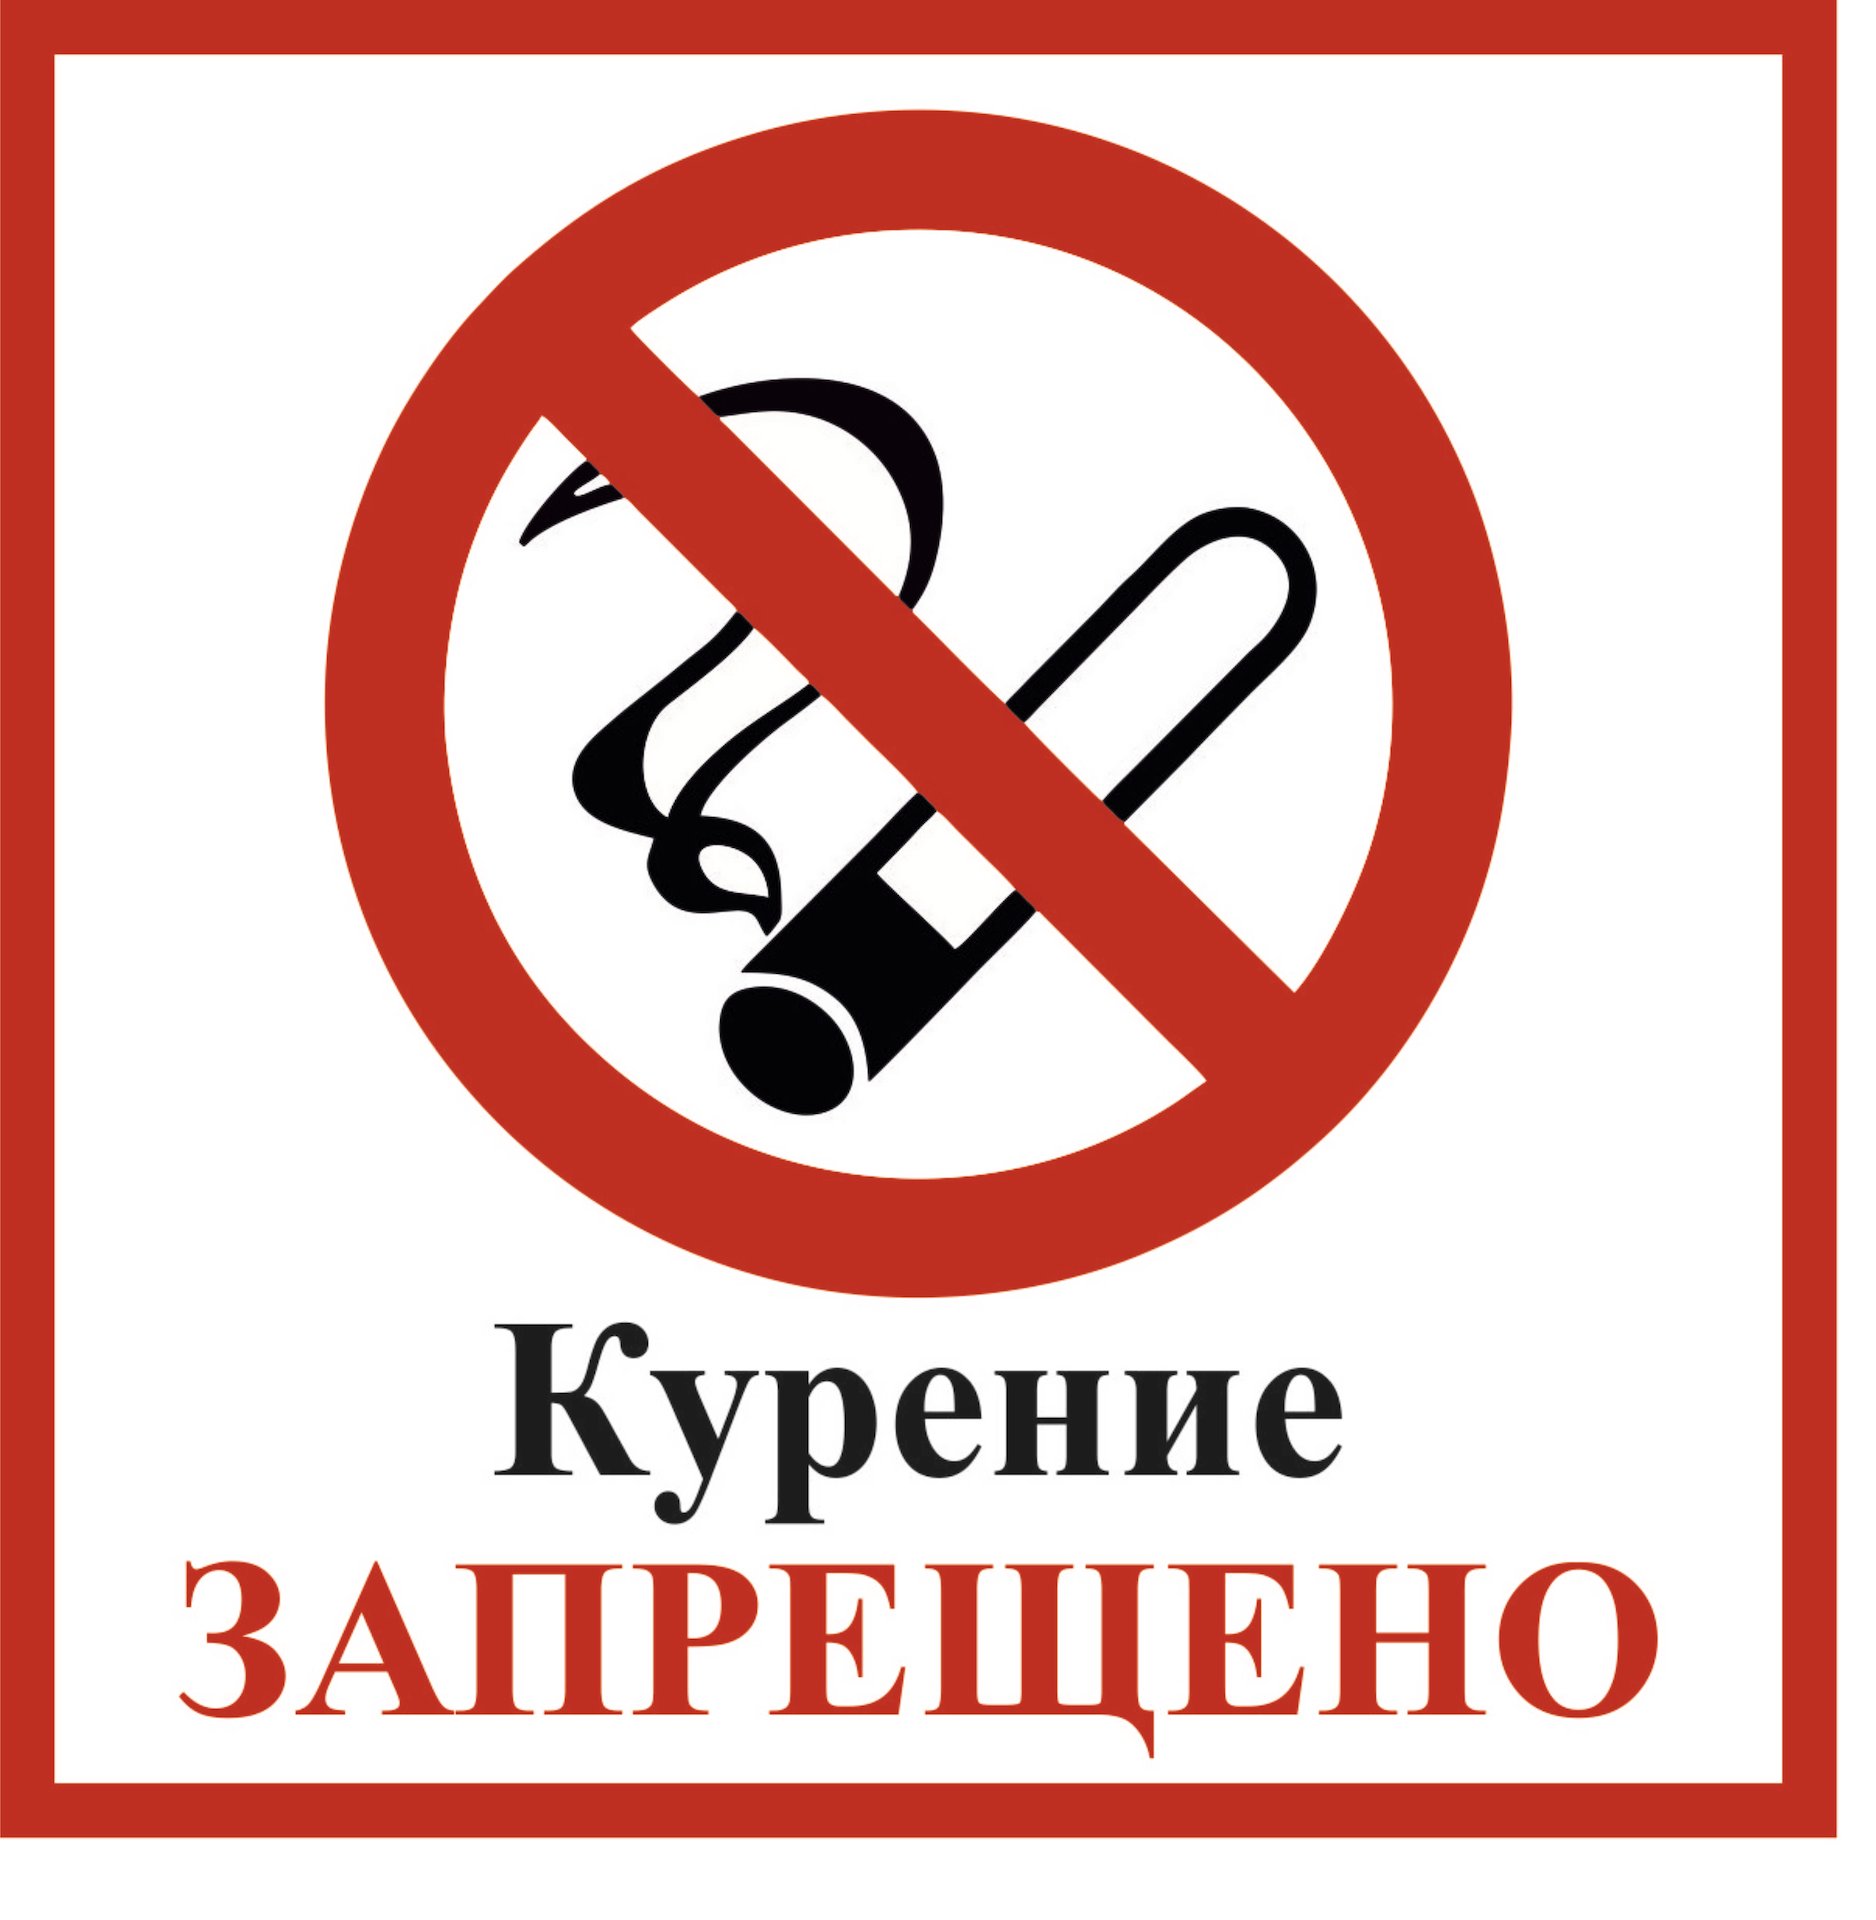 Картинка о запрете курения в общественных местах